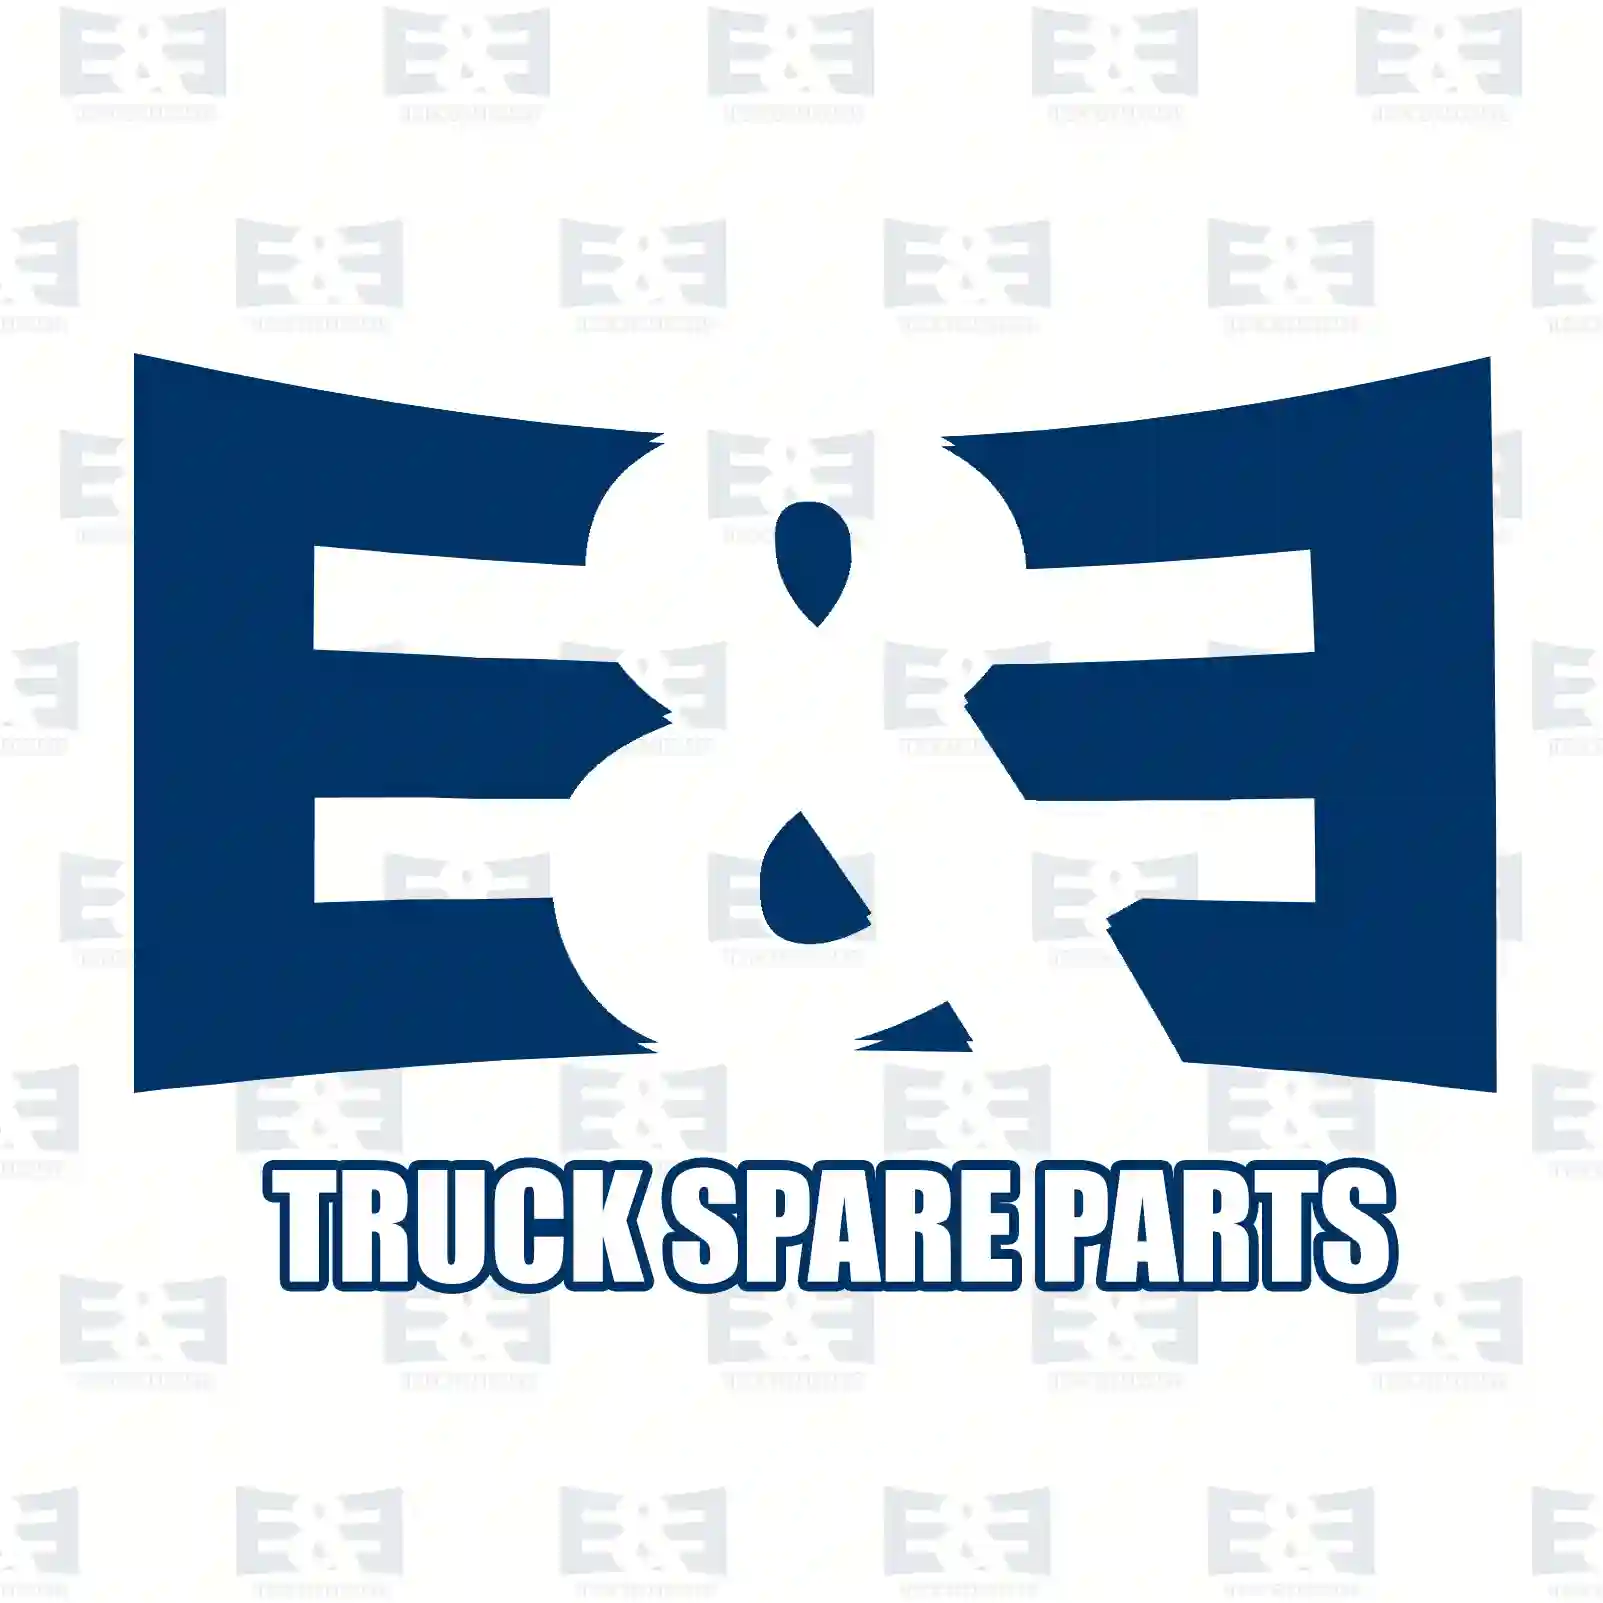 Screw, 2E2285228, 06020990381, 000912010077, 000912010220, ||  2E2285228 E&E Truck Spare Parts | Truck Spare Parts, Auotomotive Spare Parts Screw, 2E2285228, 06020990381, 000912010077, 000912010220, ||  2E2285228 E&E Truck Spare Parts | Truck Spare Parts, Auotomotive Spare Parts